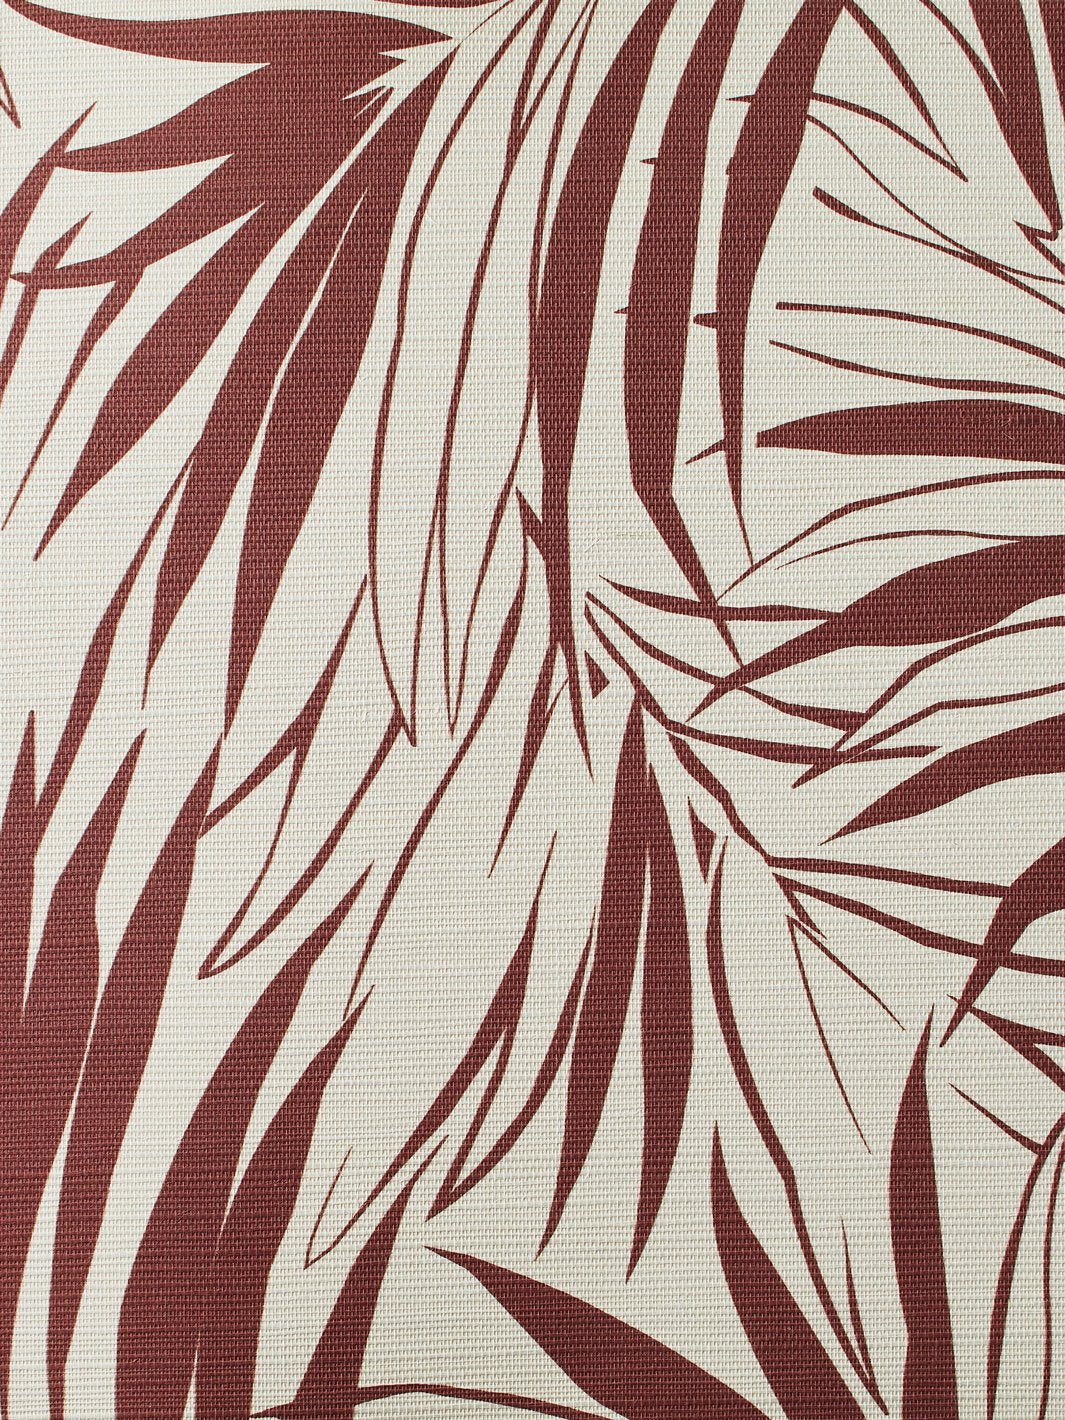 'Majesty Palm' Grasscloth' Wallpaper by Wallshoppe - Rust